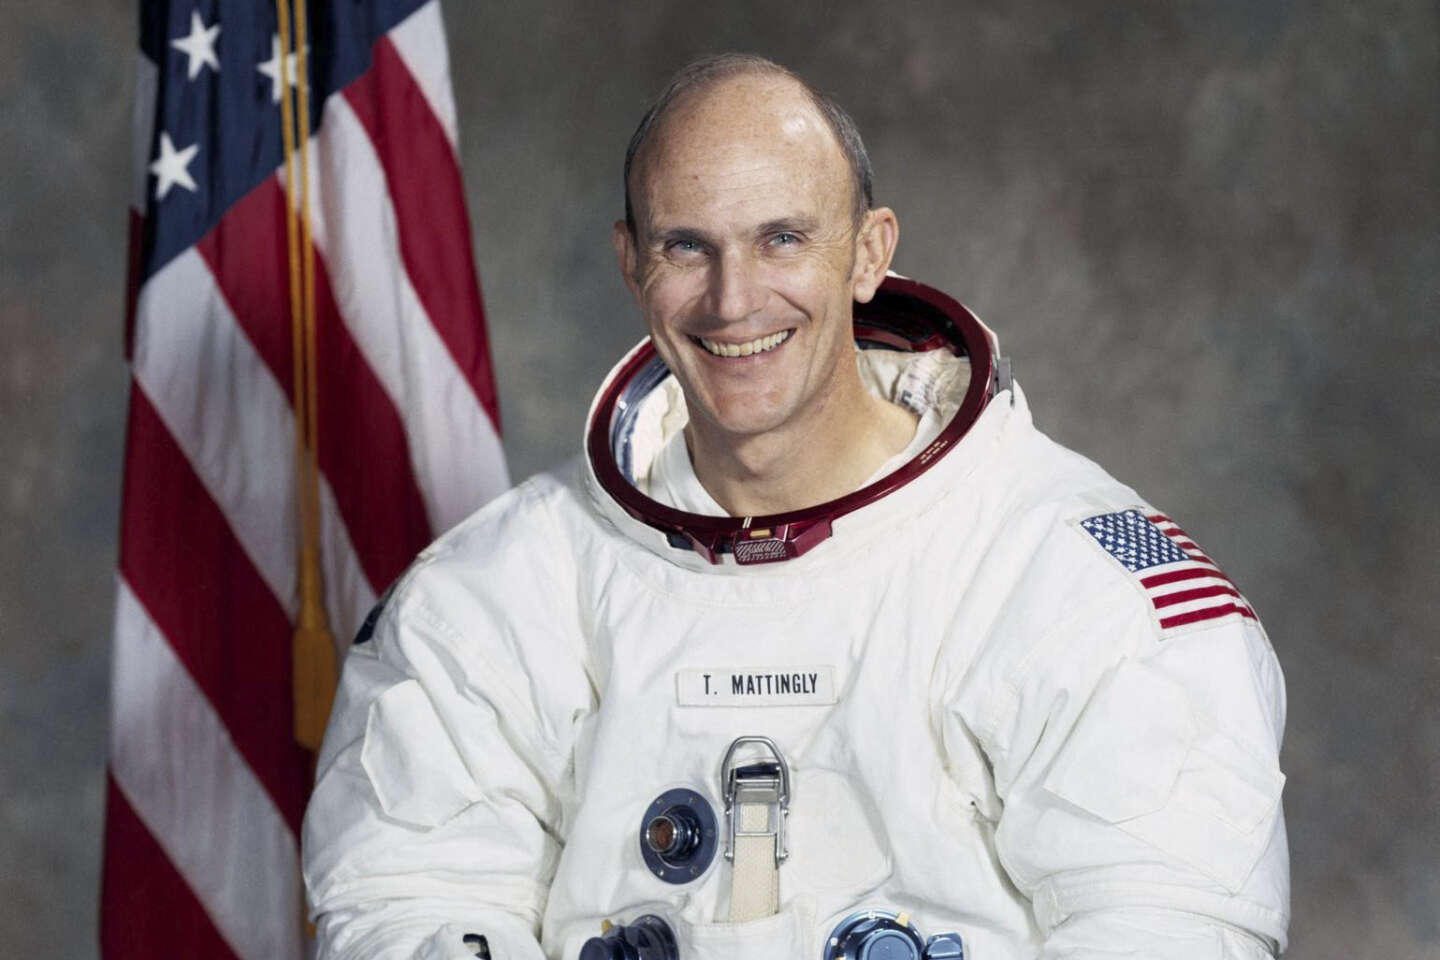 È morto l’astronauta americano Thomas Mattingly, soccorritore dell’Apollo 13